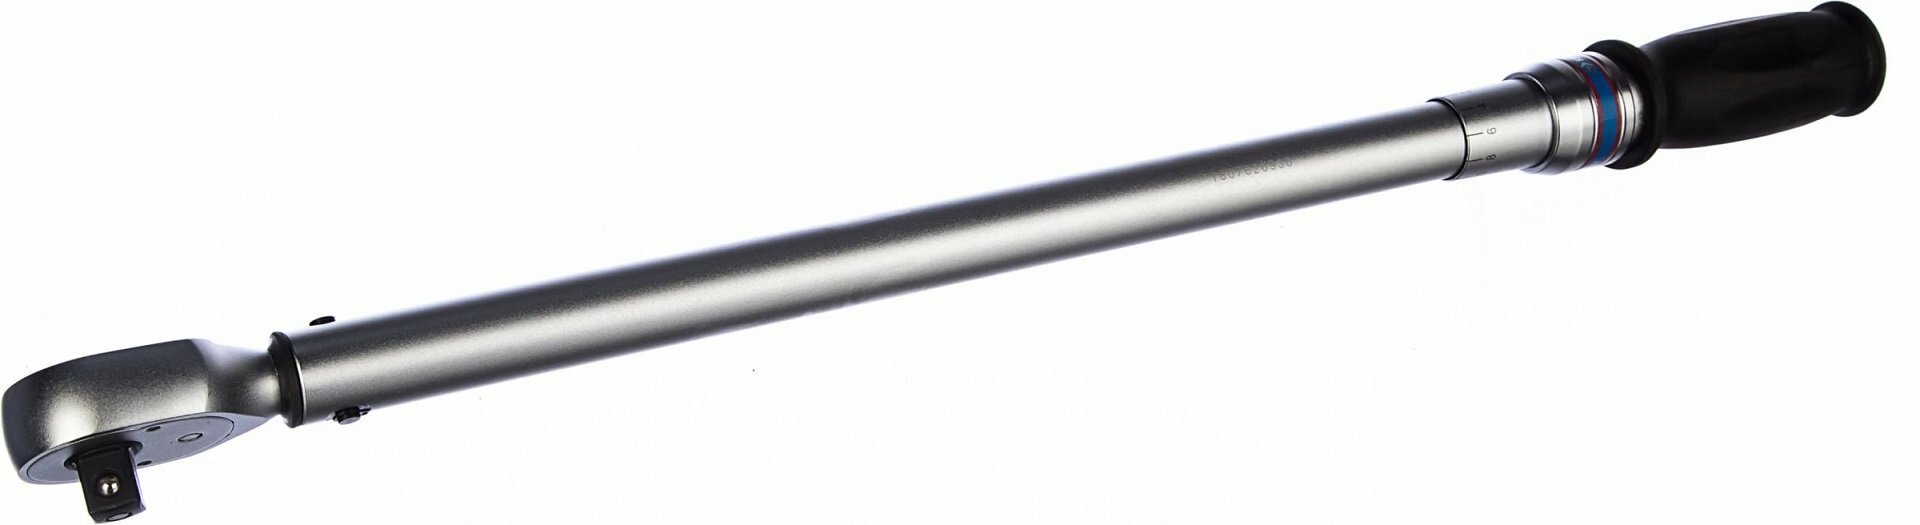 Динамометрический ключ серии "EXACT" 1/2" 60-340 Нм для левой и правой резьбы футляр в комплекте 2 торцевые головки KING TONY P34462-2DG